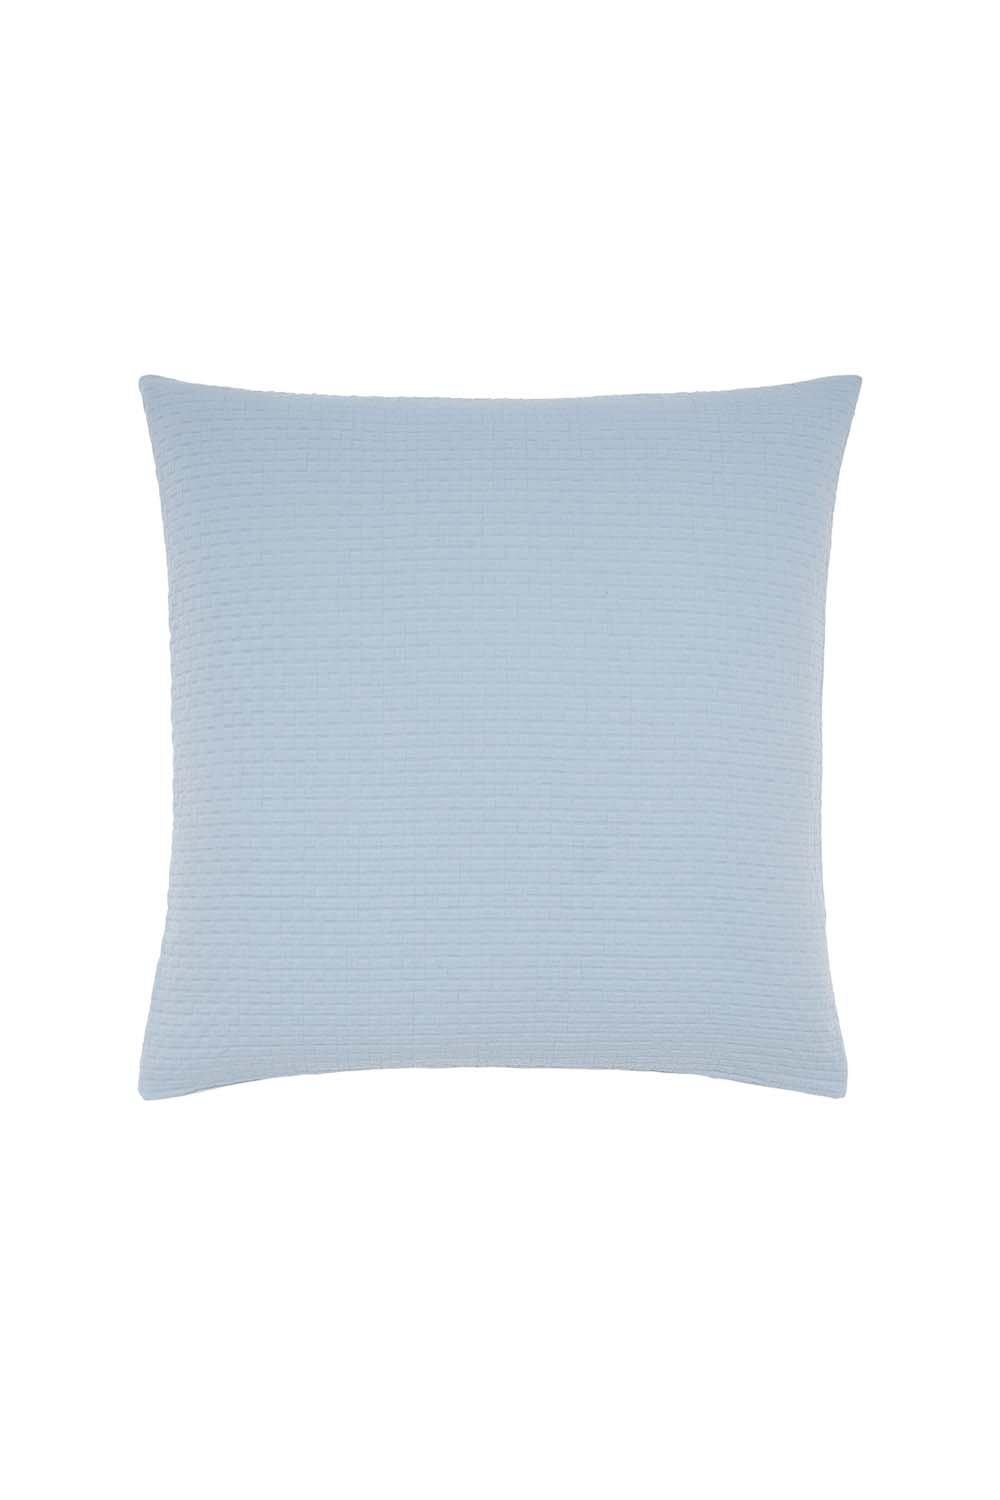 'Hush' Cotton Percale Square Pillowcase